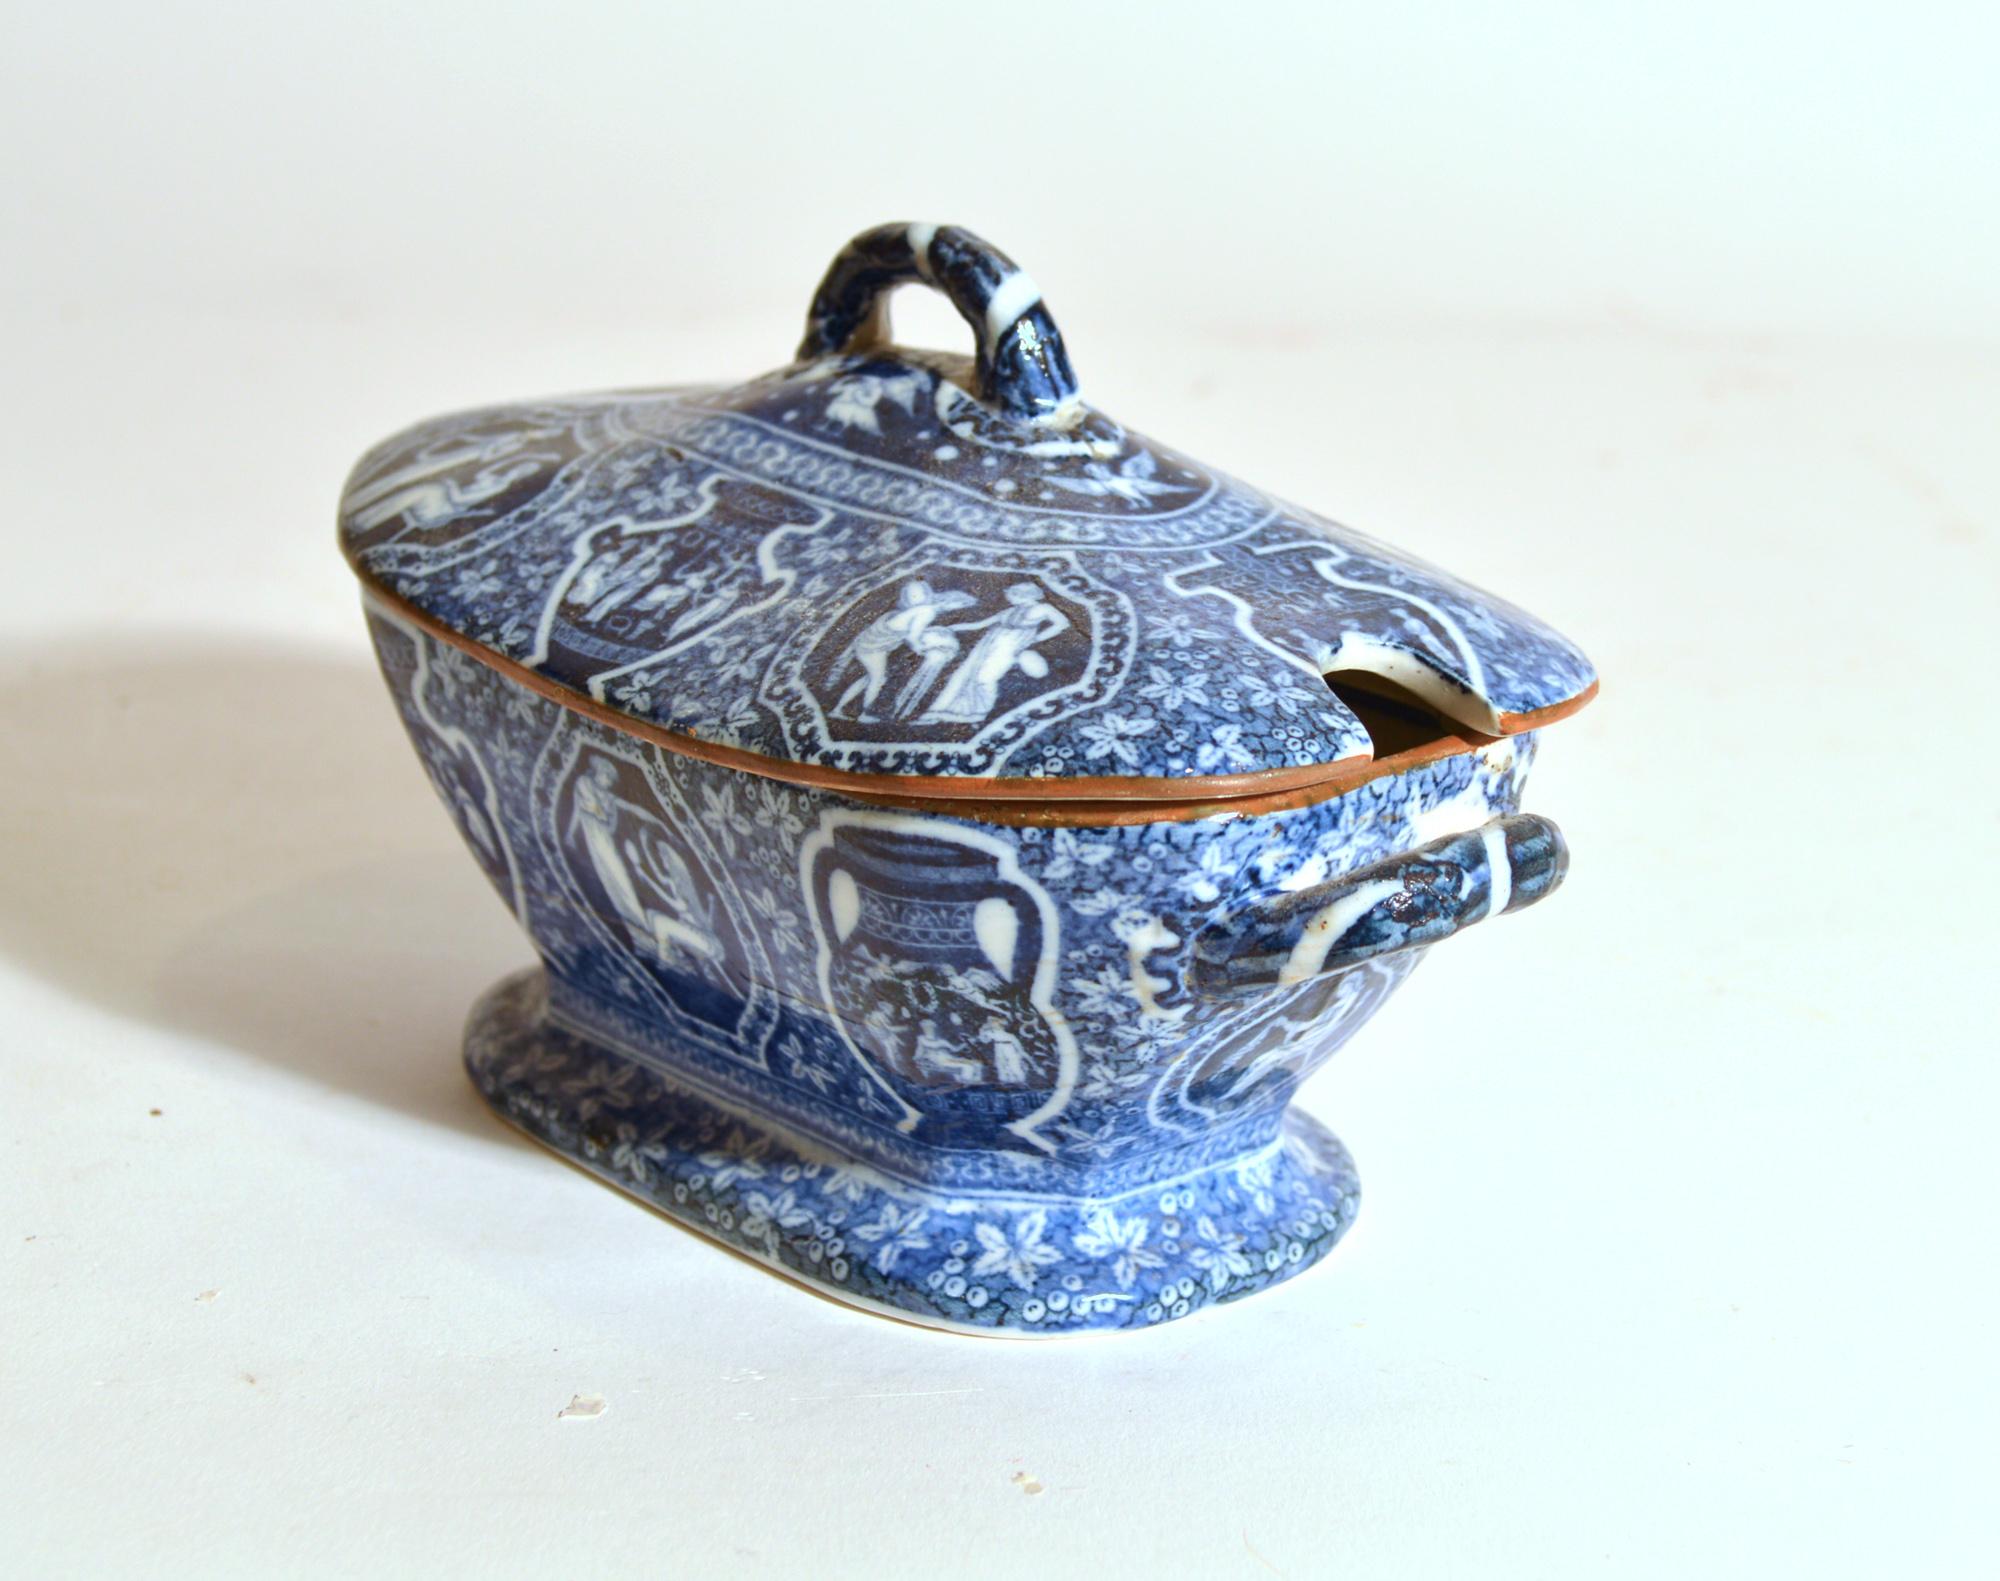 Soupière et couvercle pour sauce bleue à motif grec néo-classique de Copeland-Late Spode,
Vers 1847.

Provenant d'une grande collection d'objets à motifs grecs - veuillez vous renseigner sur d'autres pièces - assiettes, soupes, soupières, plats,